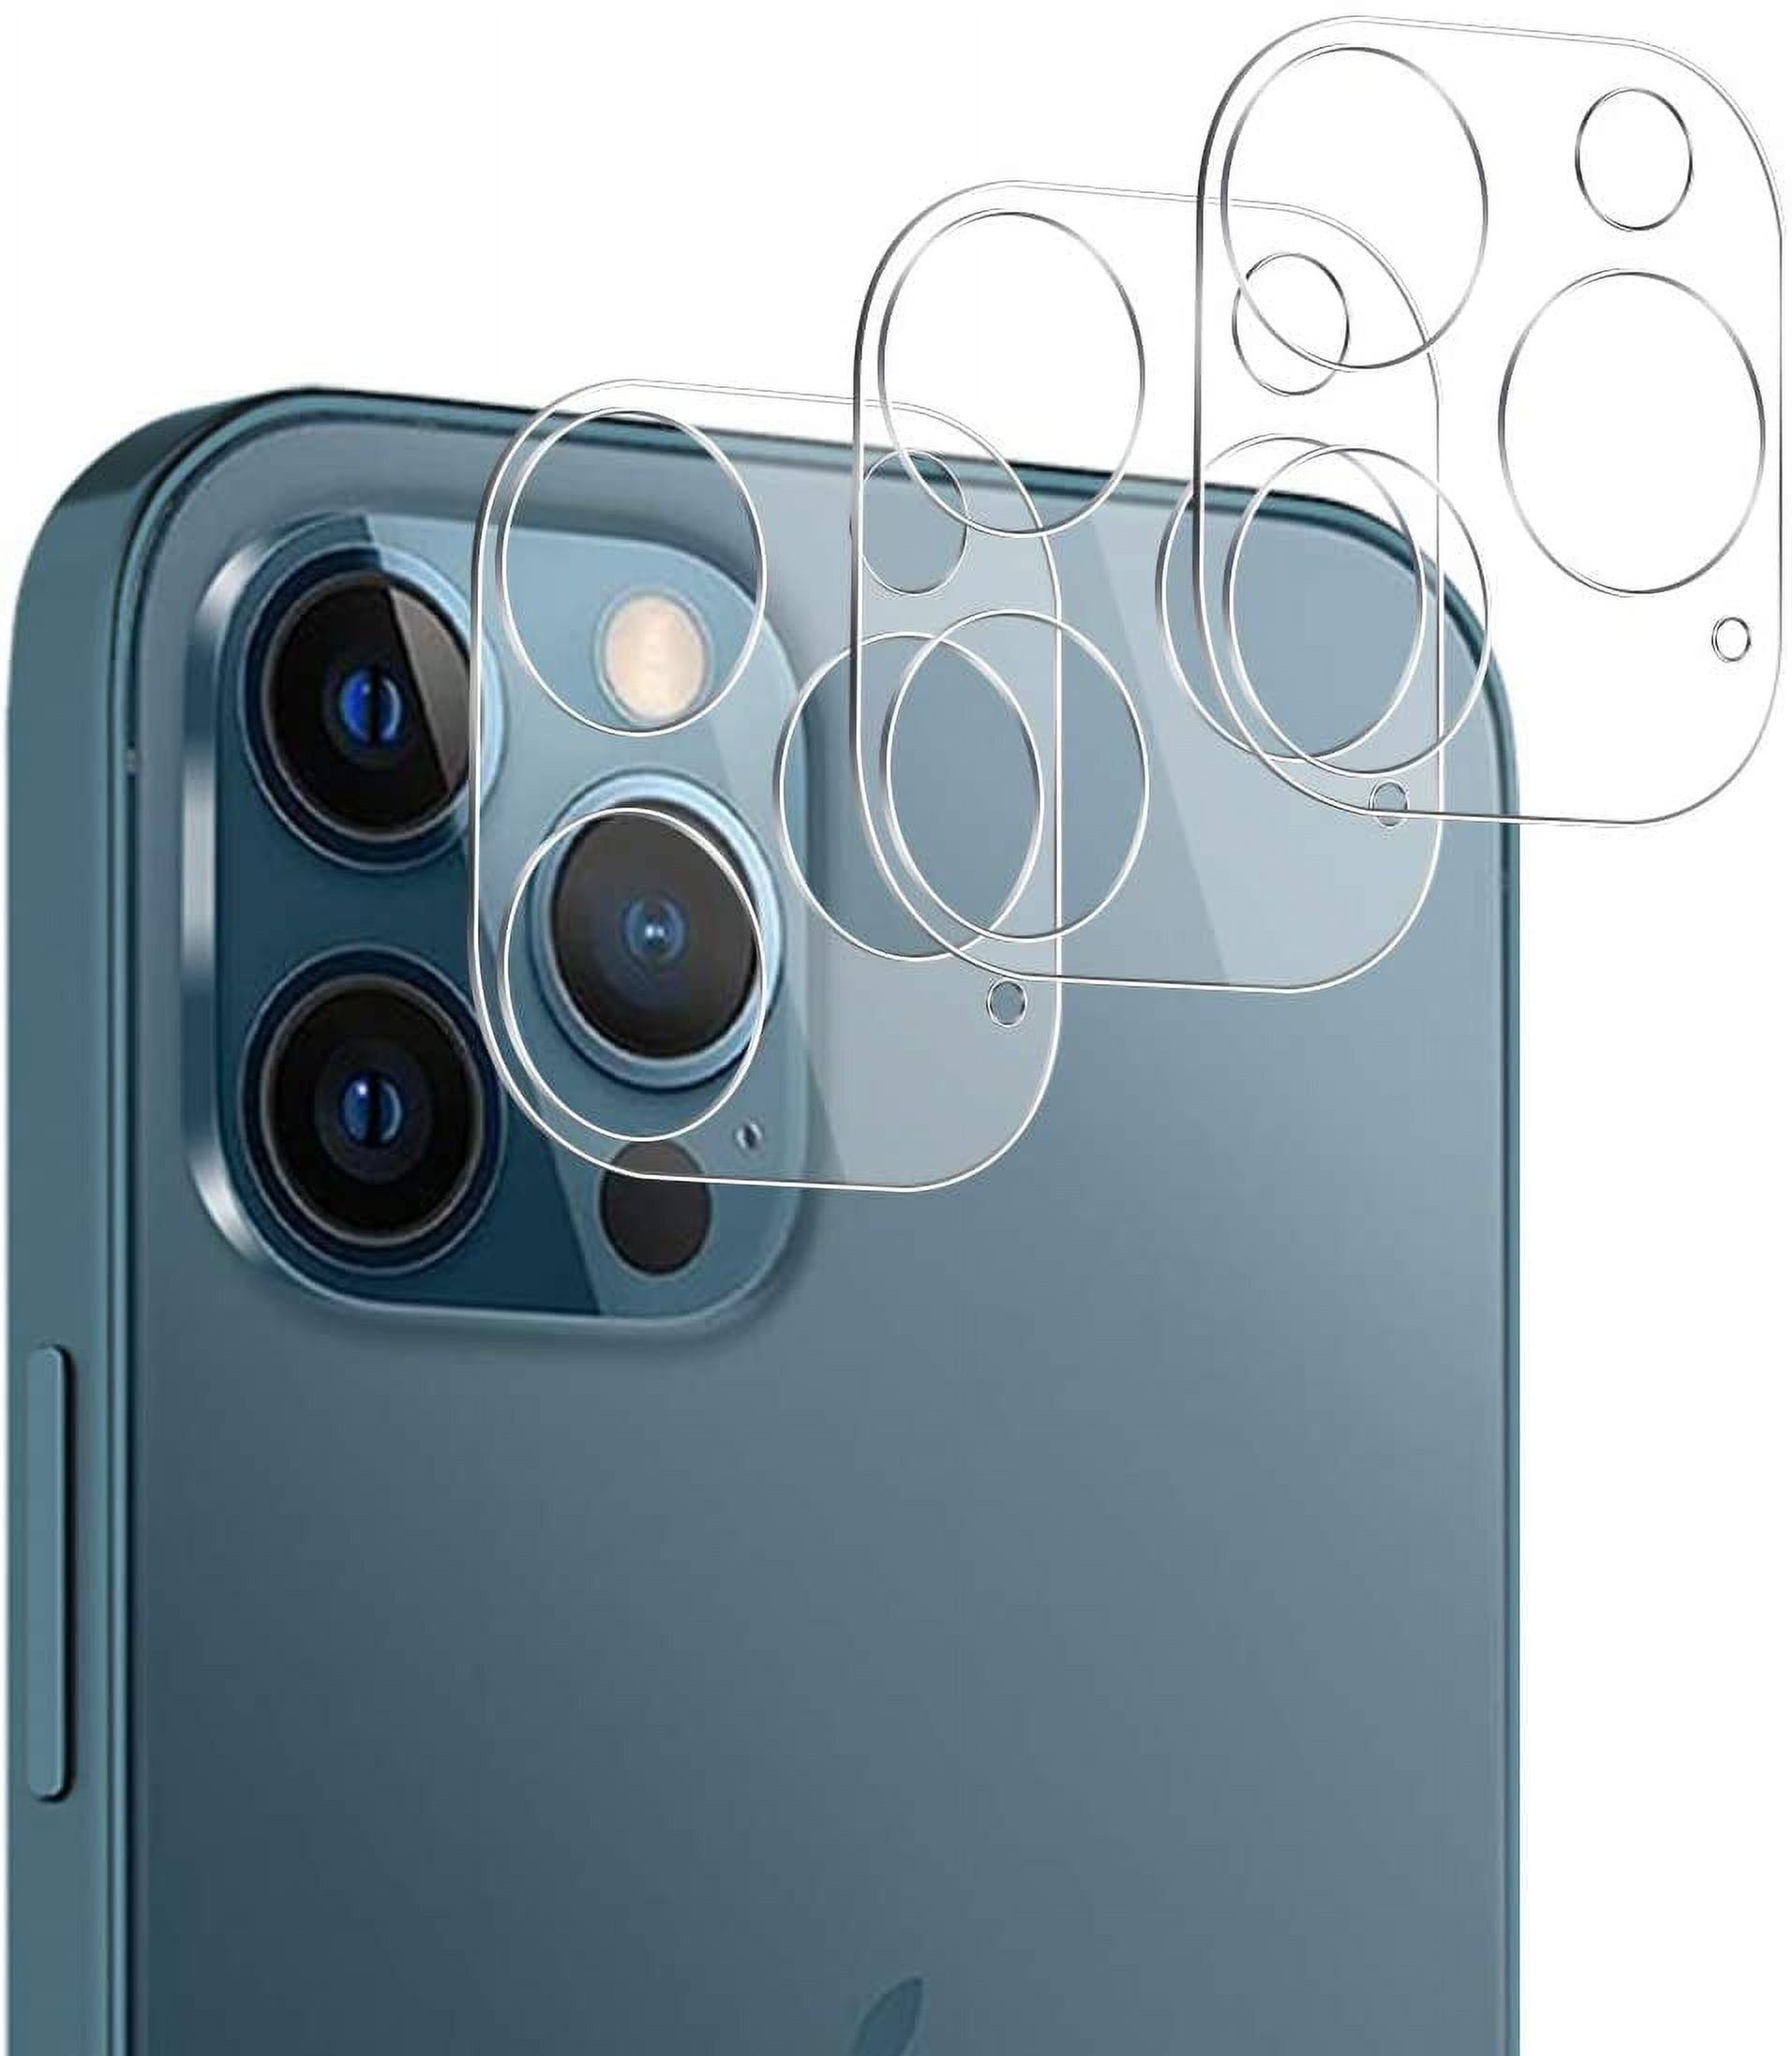 Protector cámara iPhone 12 Pro — PhoneClick